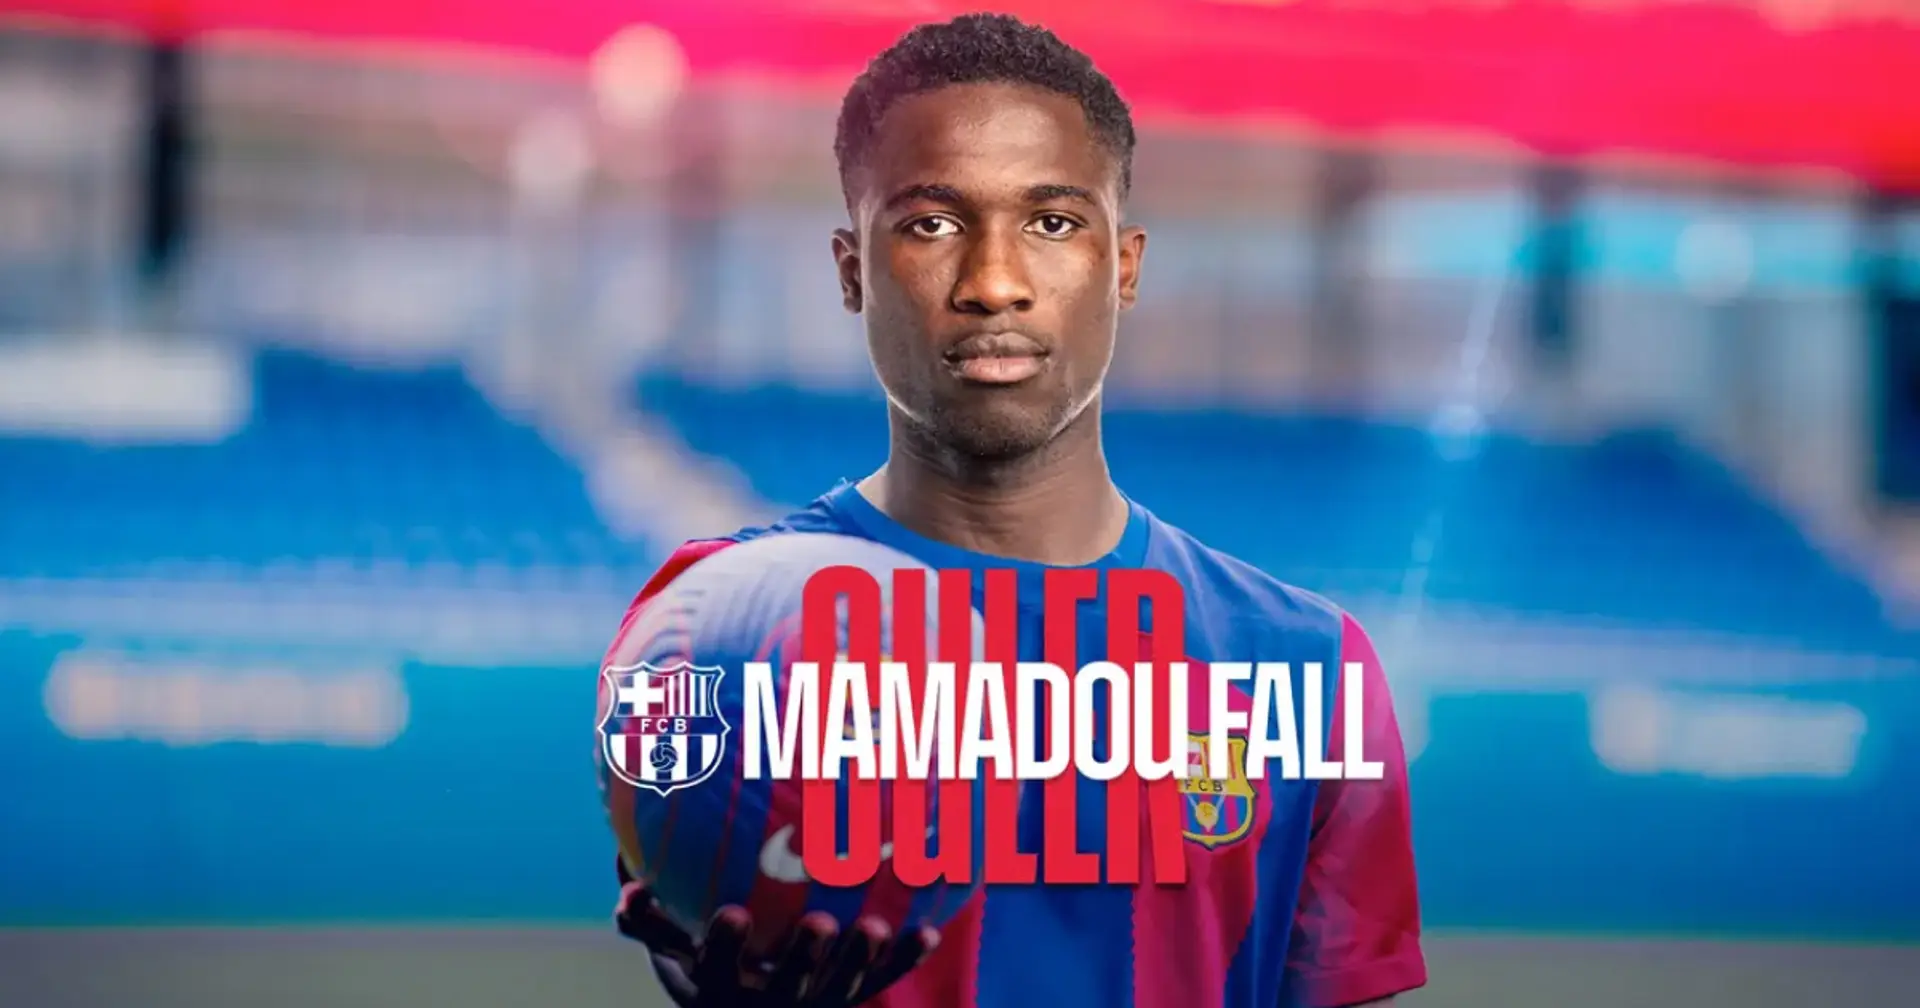 Mamadou Fall joins Barcelona